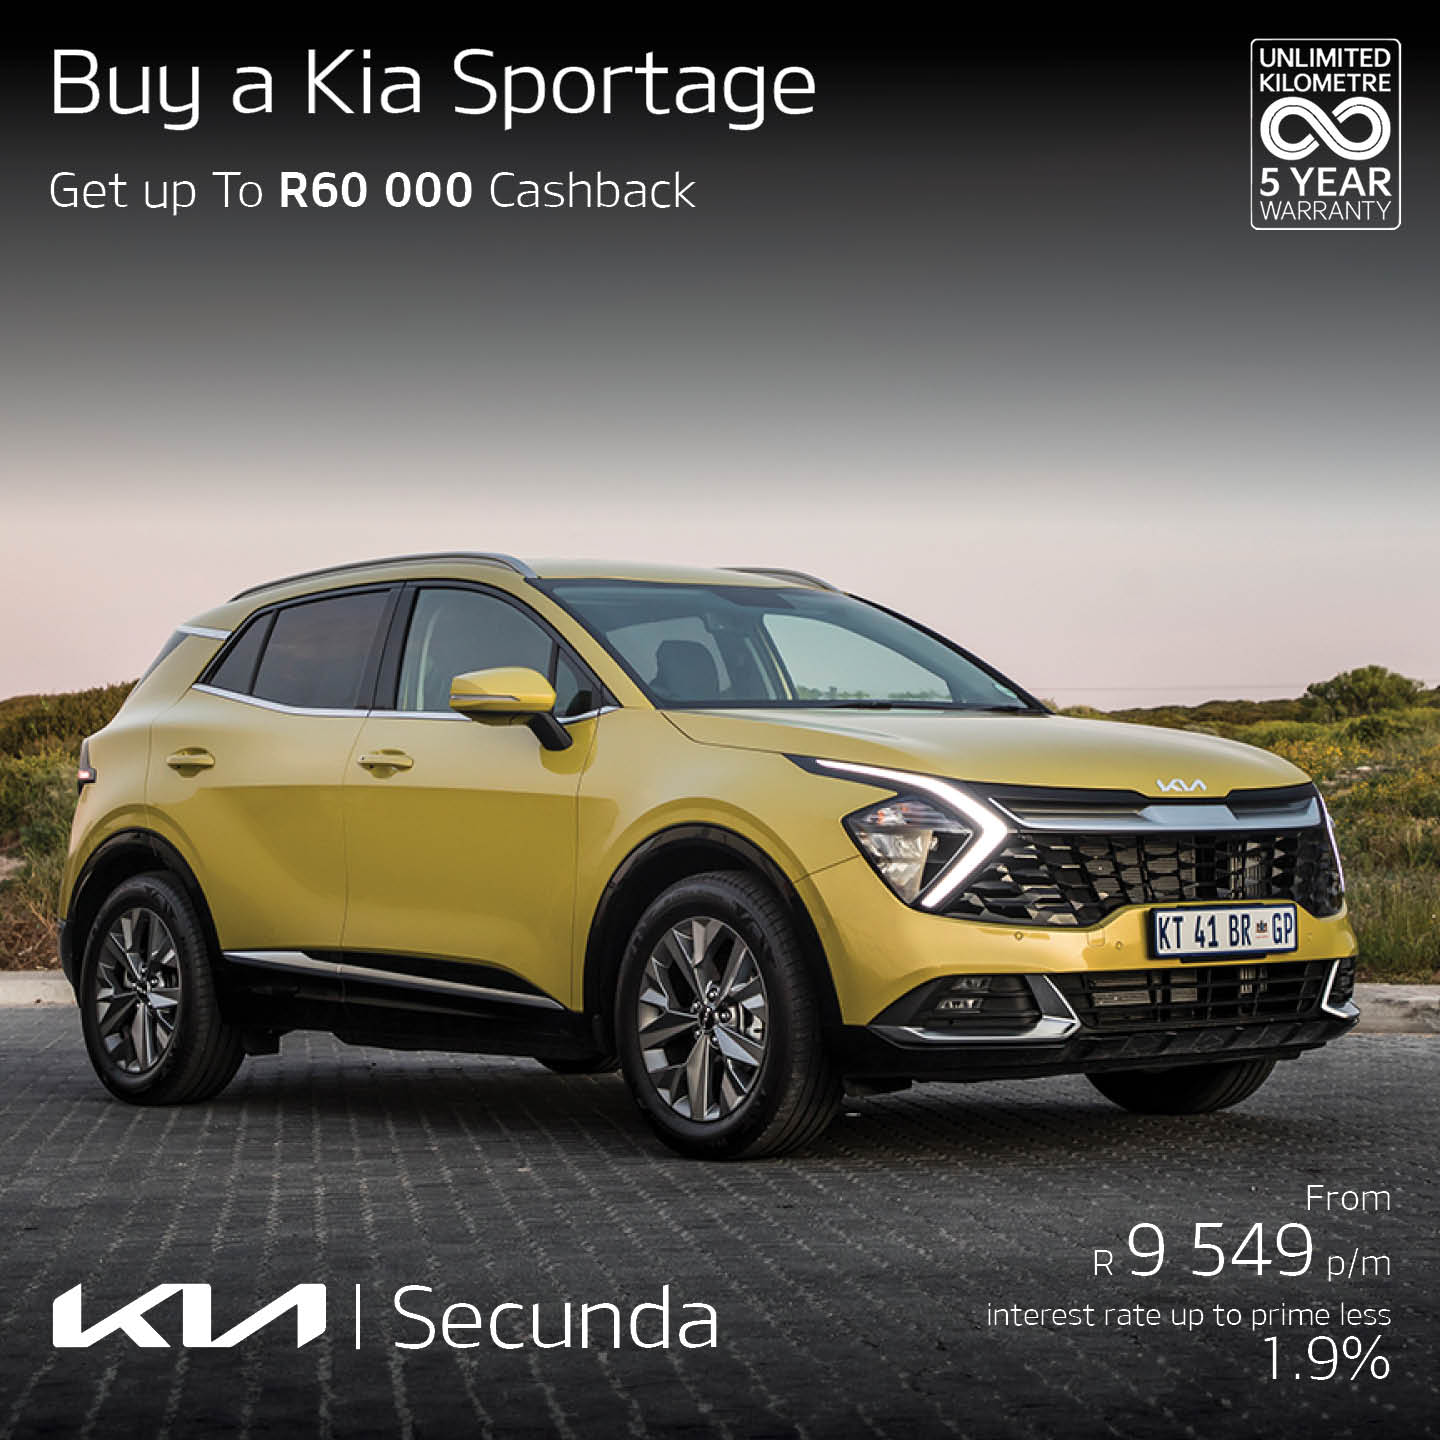 KIA Sportage image from Eastvaal Motors